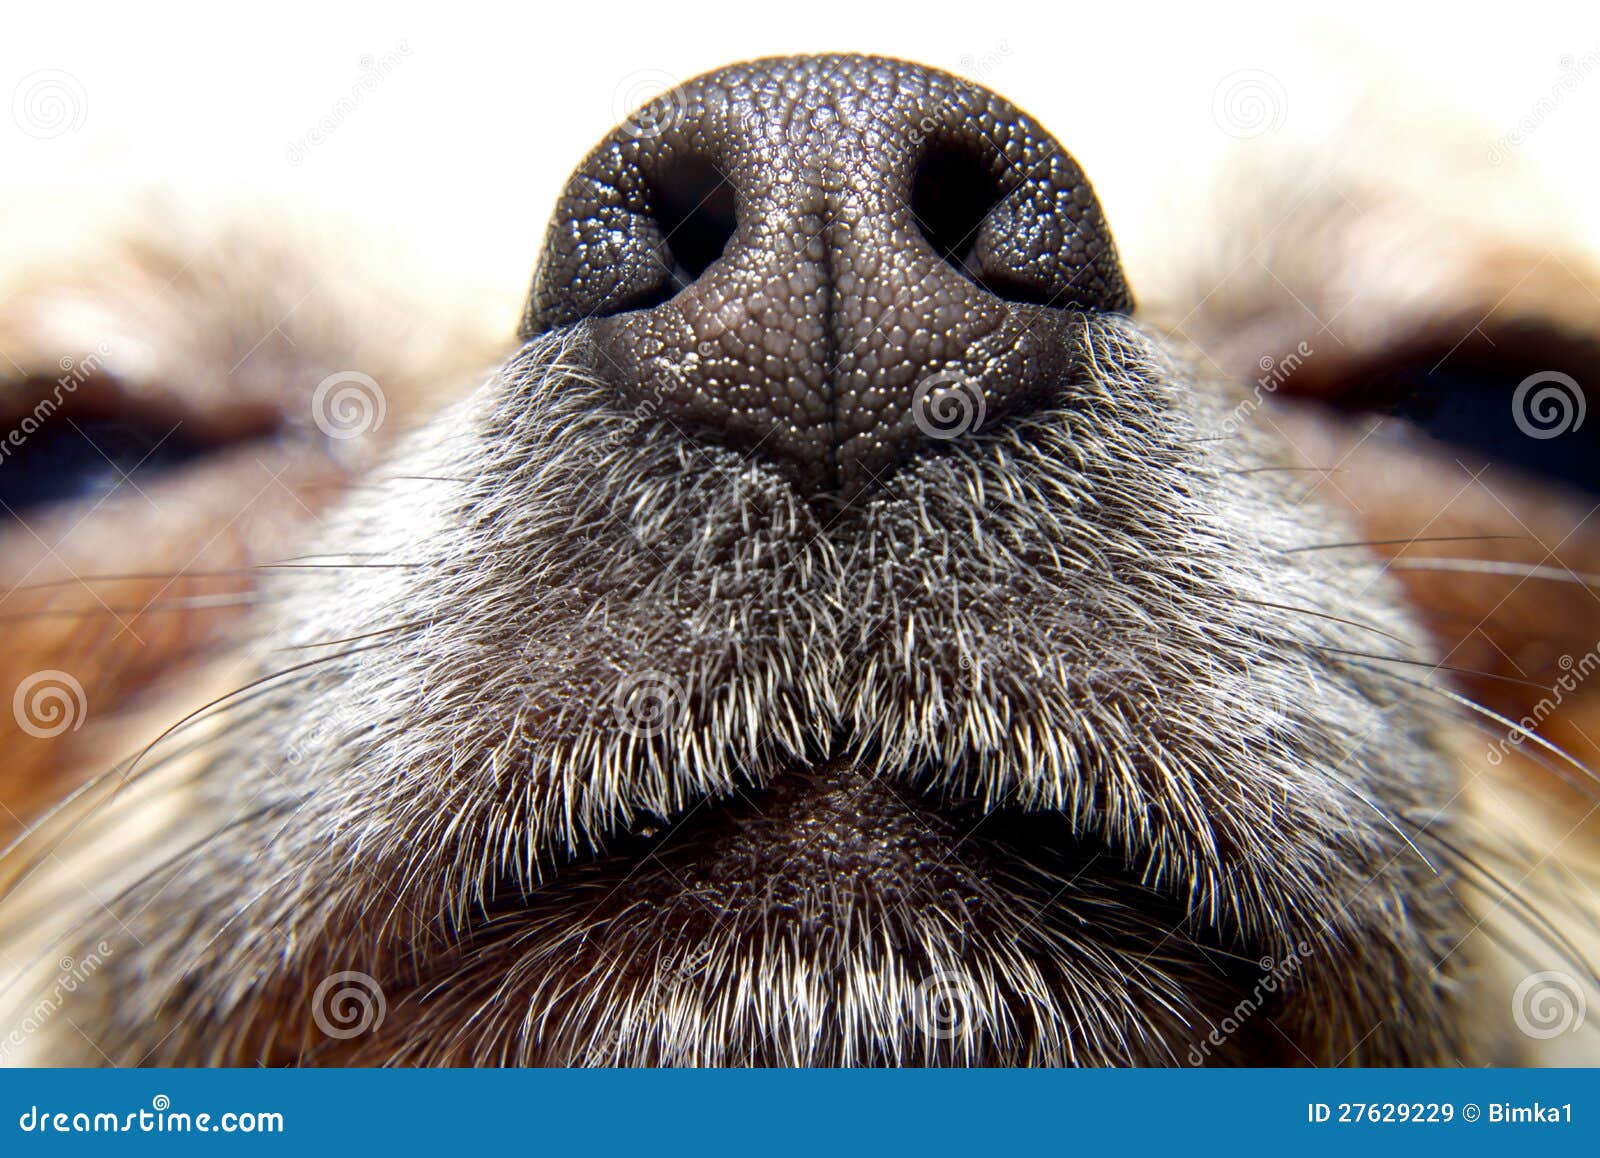 狗 鼻子 家畜 - Pixabay上的免费照片 - Pixabay